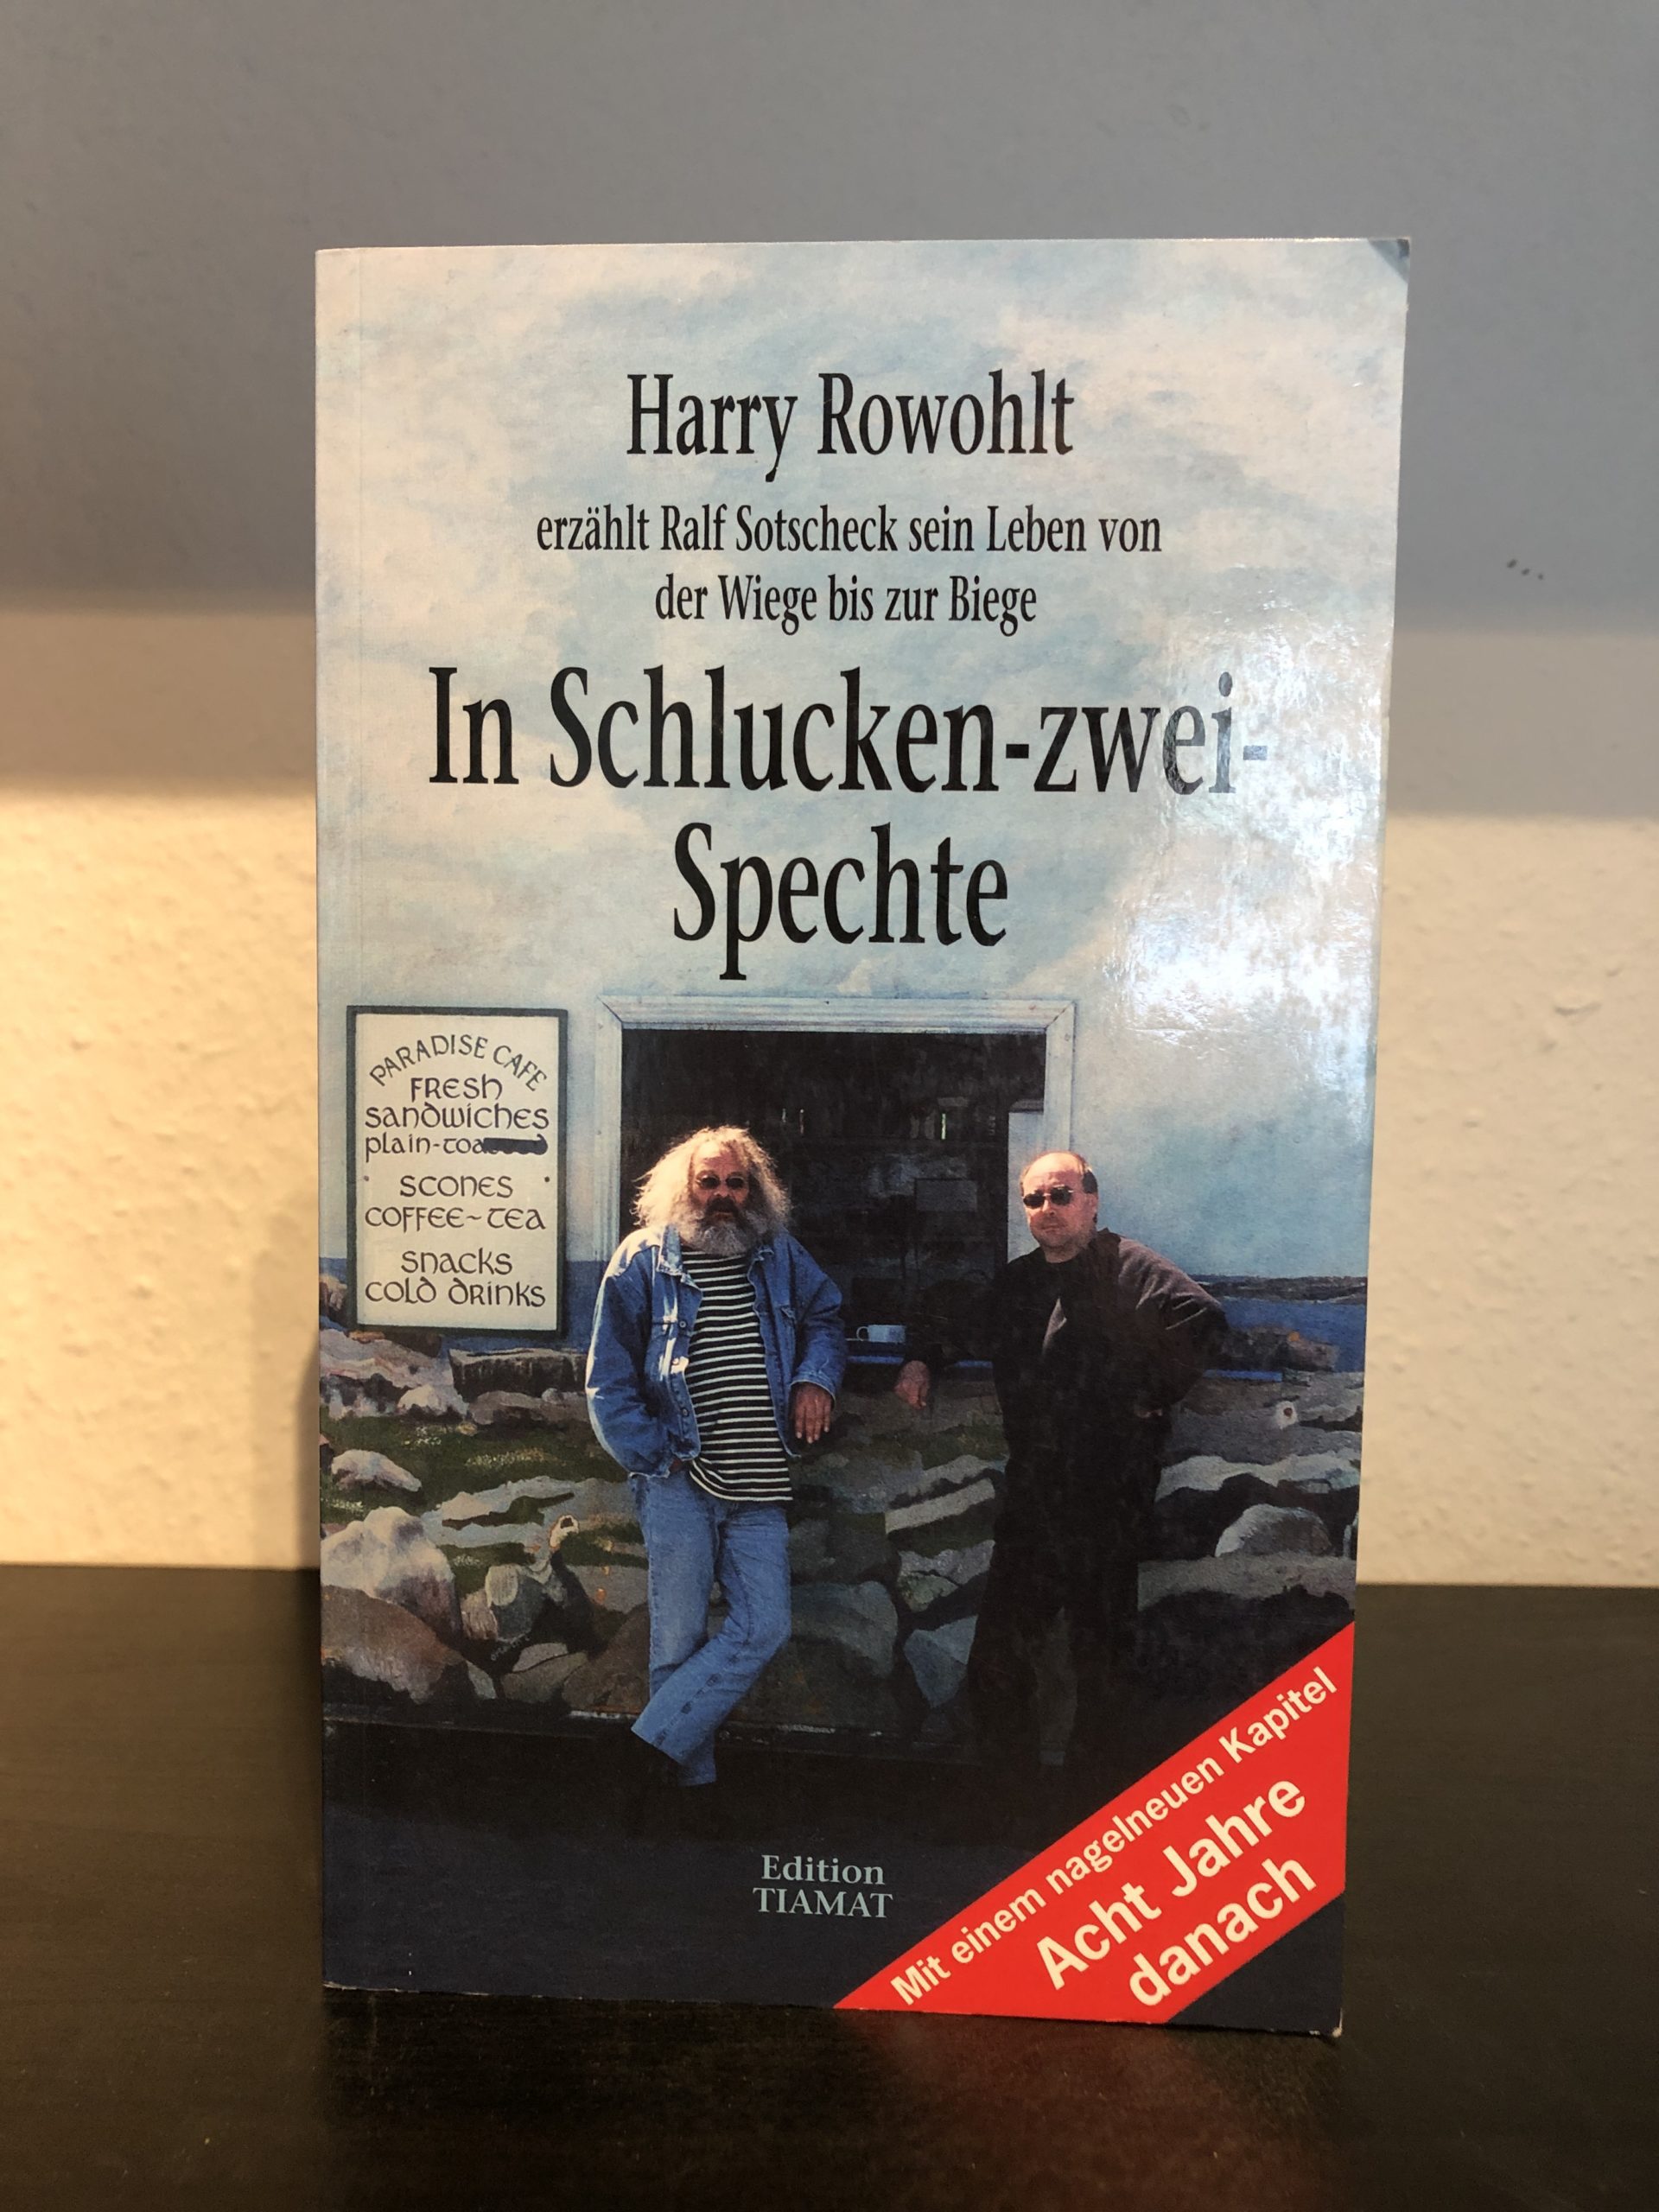 In Schlucken-zwei-Specht - Harry Rowohlt, Ralf Sotscheck